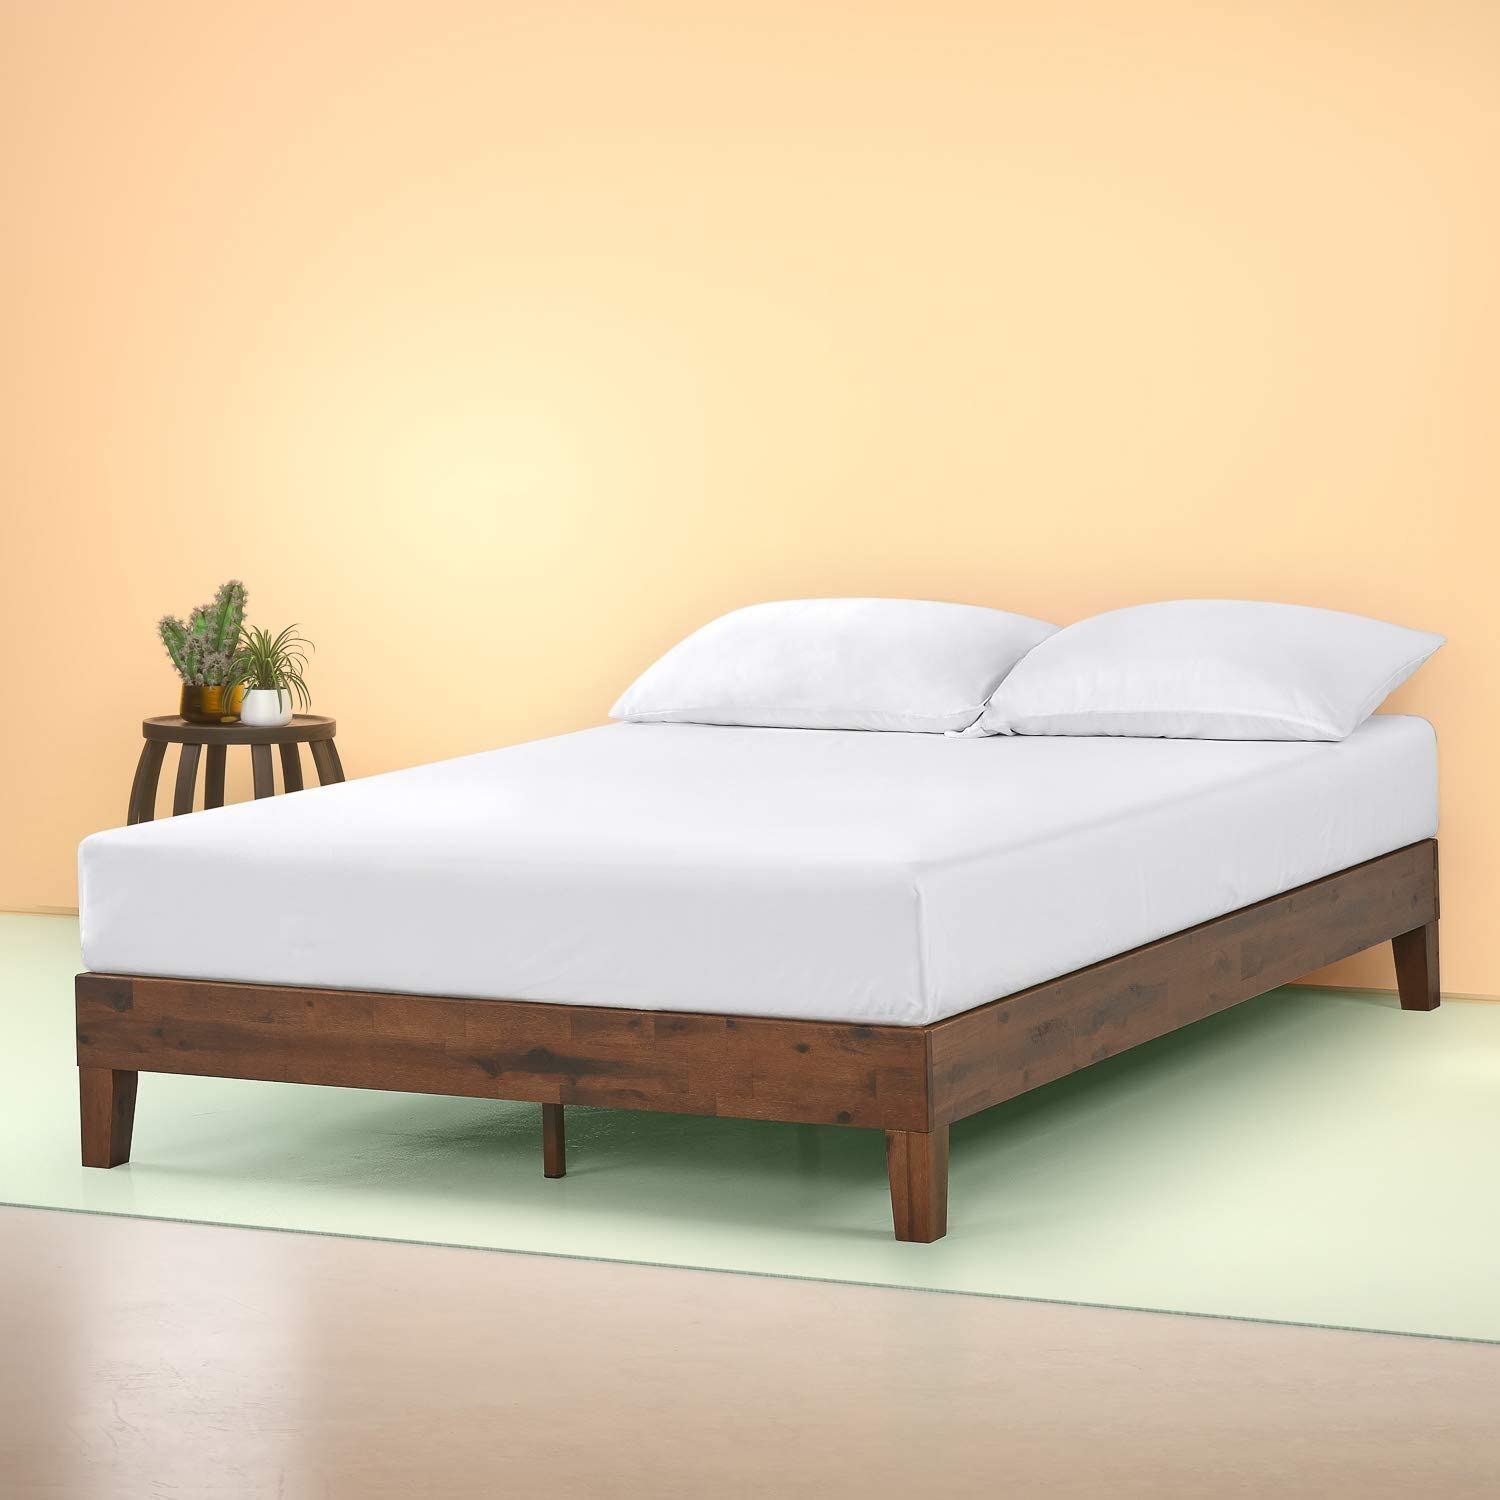 Solid Platform Bed No Slats Visualhunt, Wood Slat Platform Bed Frame